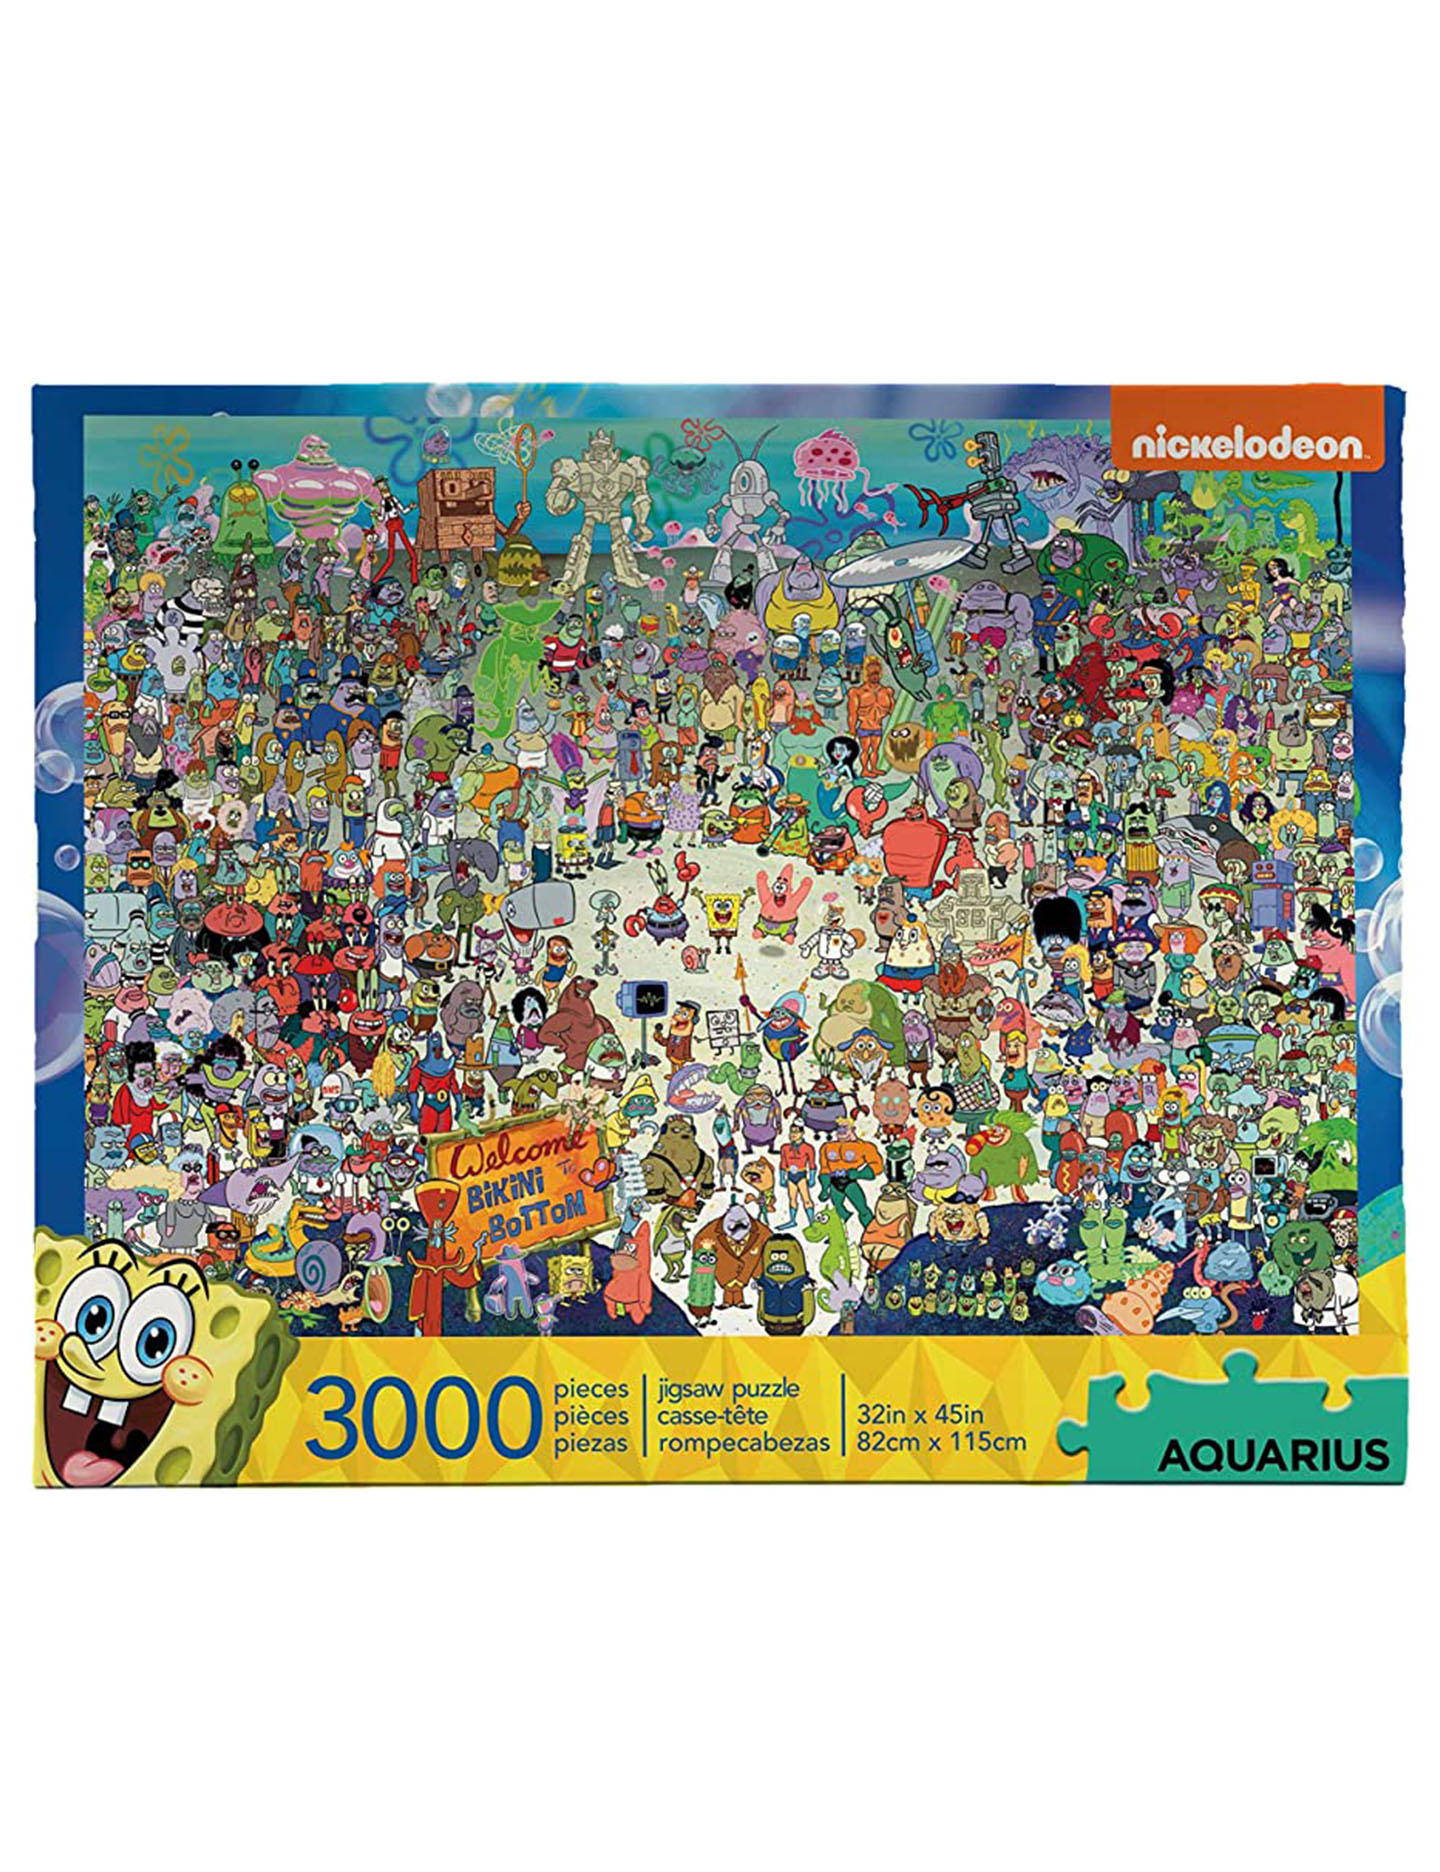 Spongebob Squarepants Puzzle 3000 Piece Jigsaw Puzzle - Home